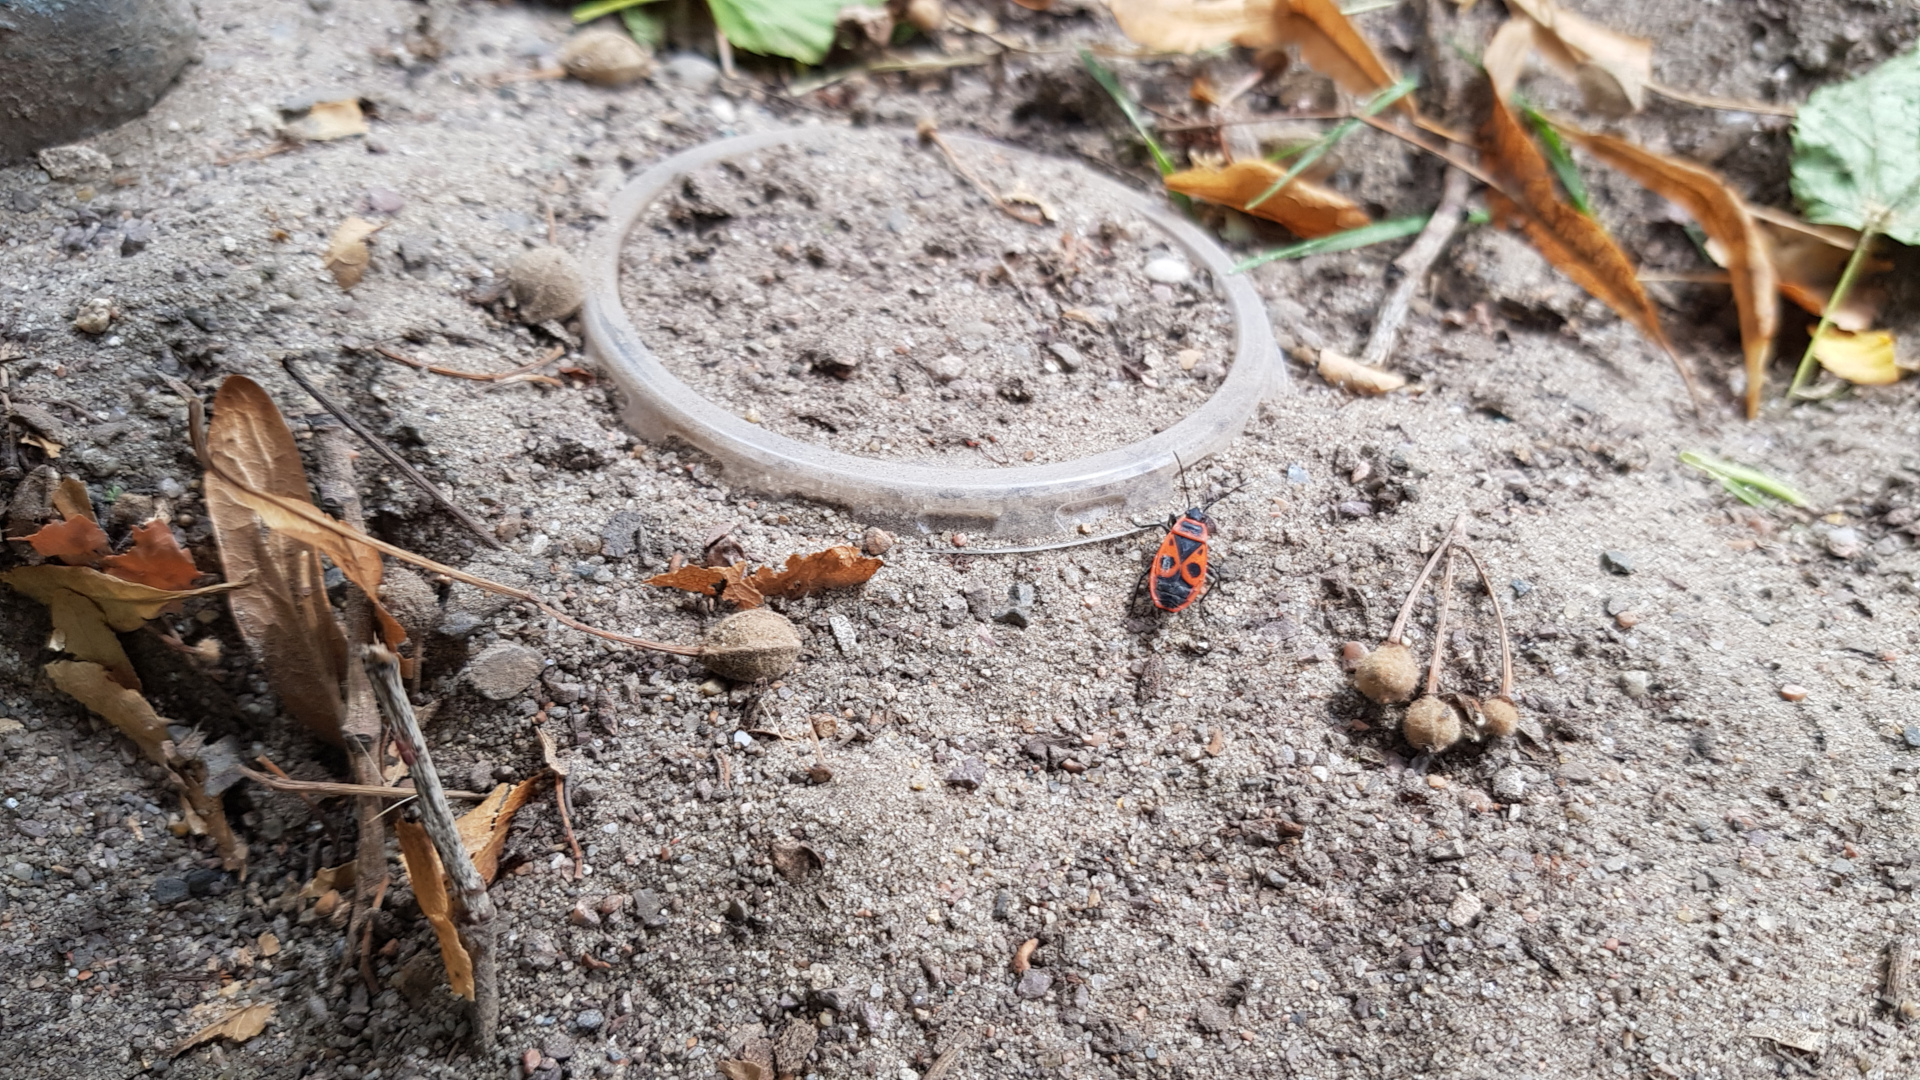 Käfer bei Plastikring auf Boden